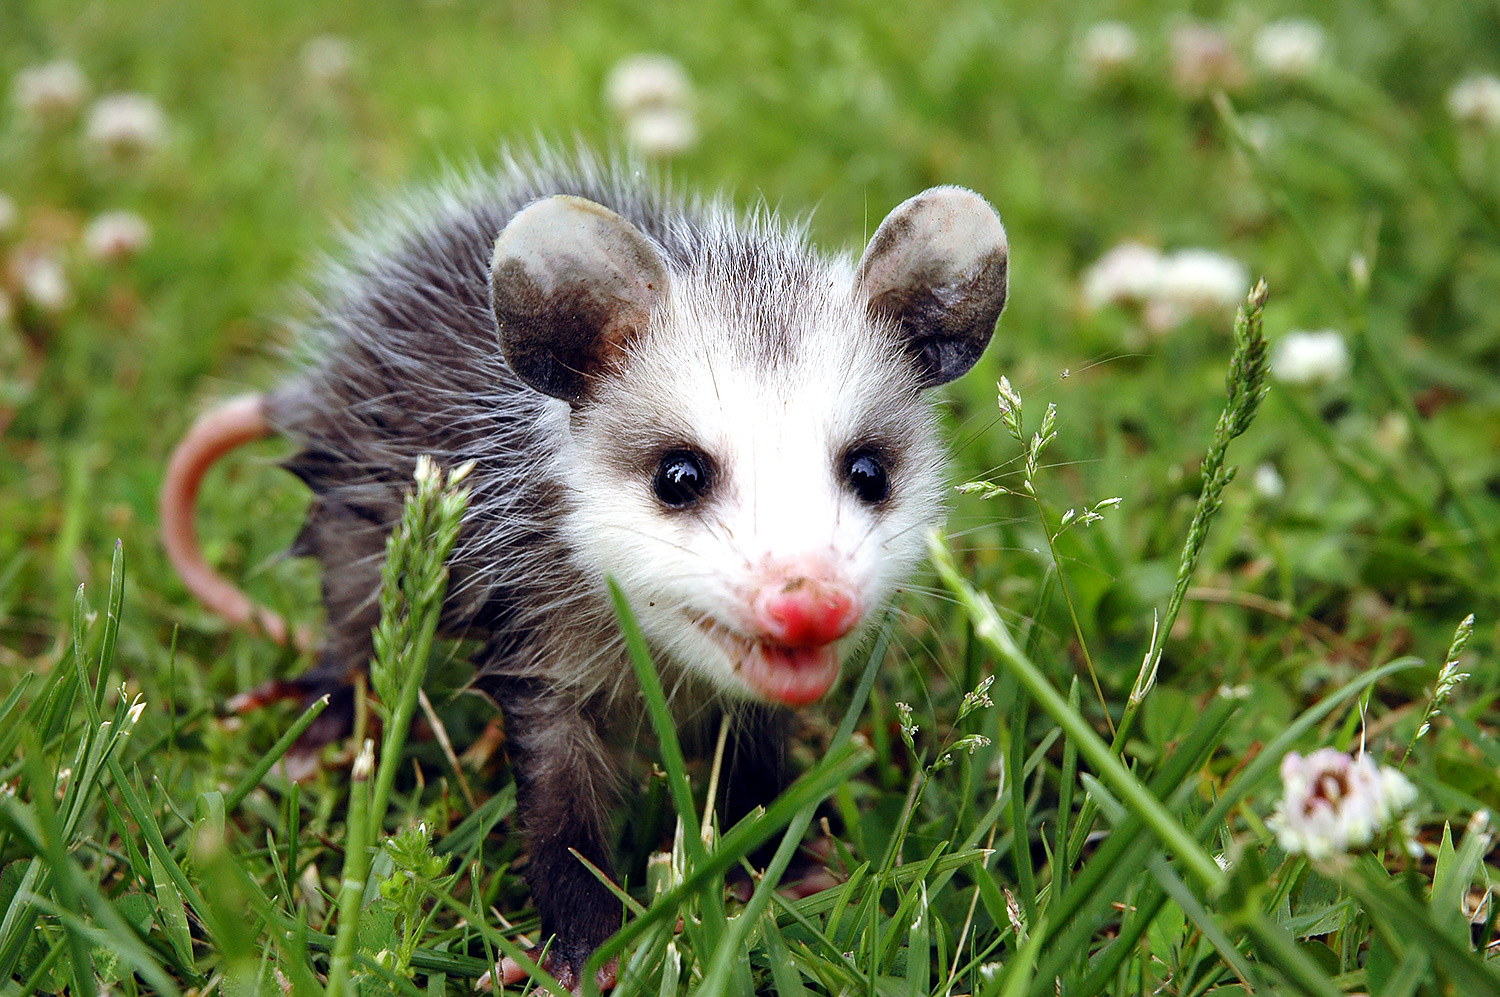 baby possum walking through grass, © Tim Harman